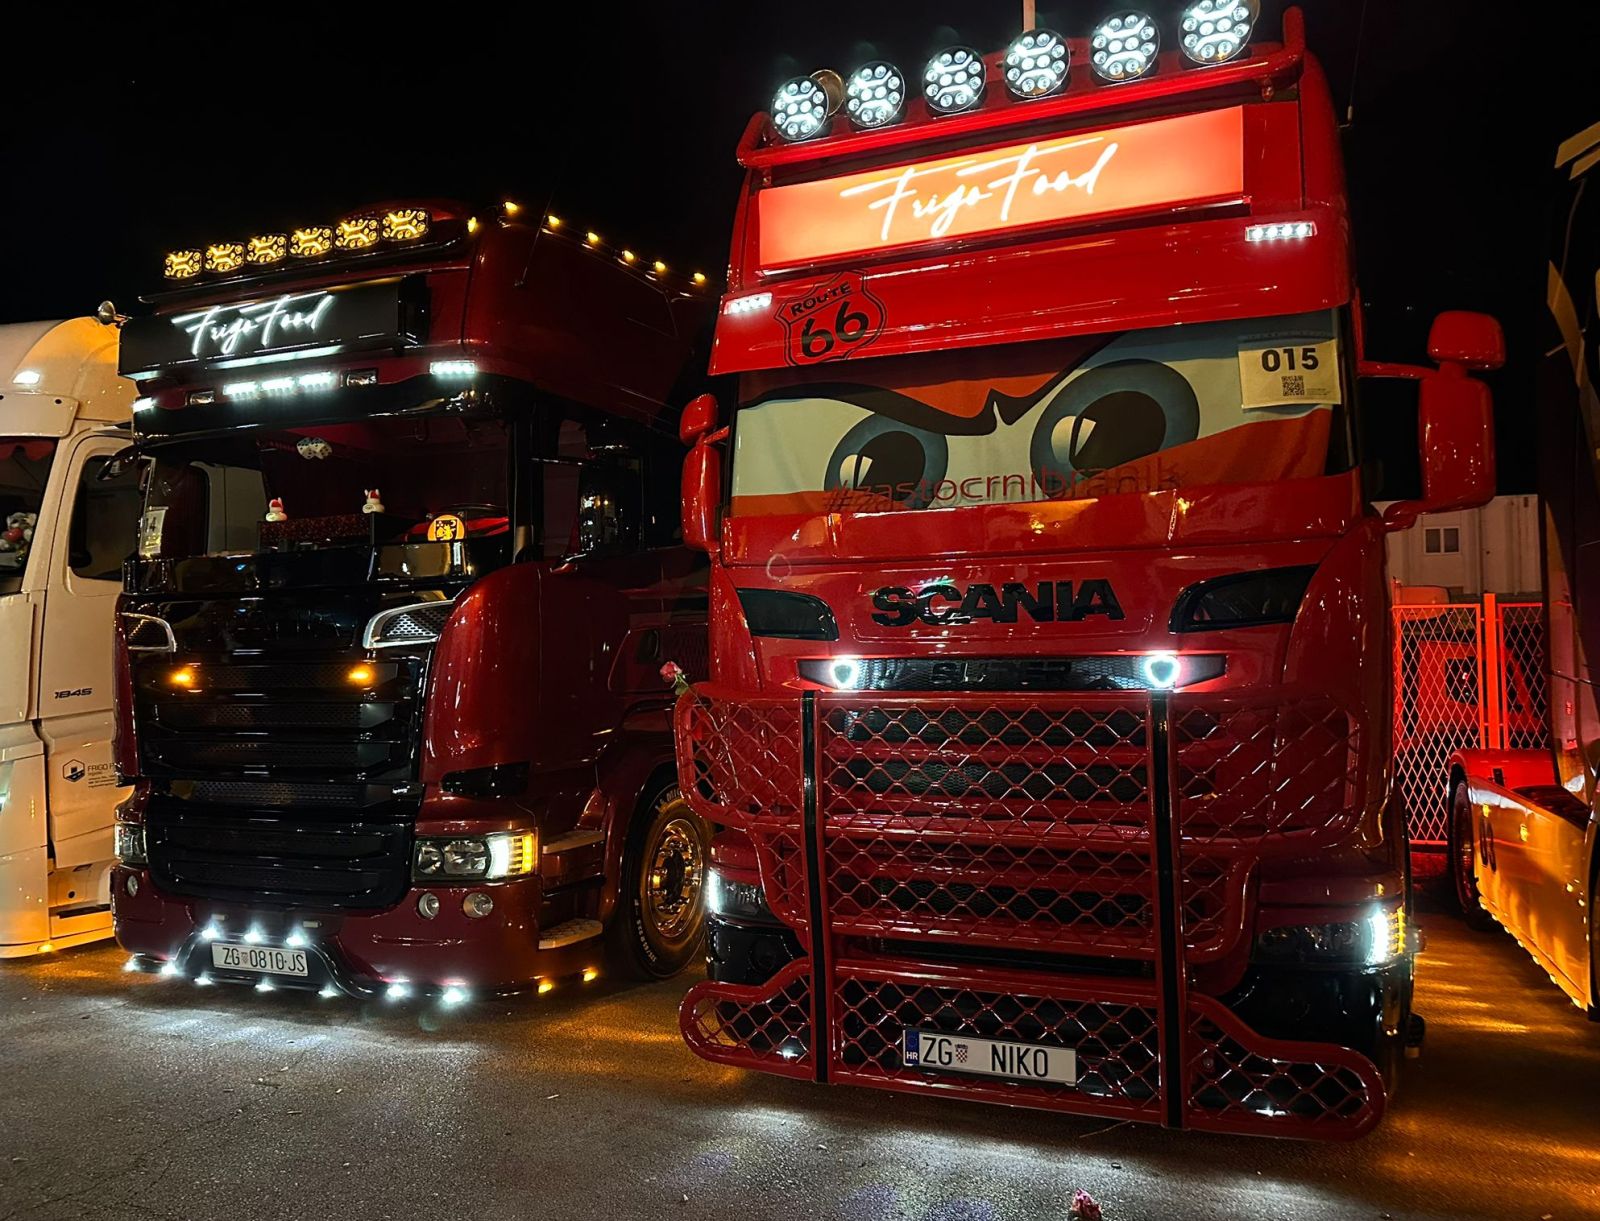 Truck show Dalmacija održan u nevjerojatnoj atmosferi uz glavno pitanje - kad će opet!? 25